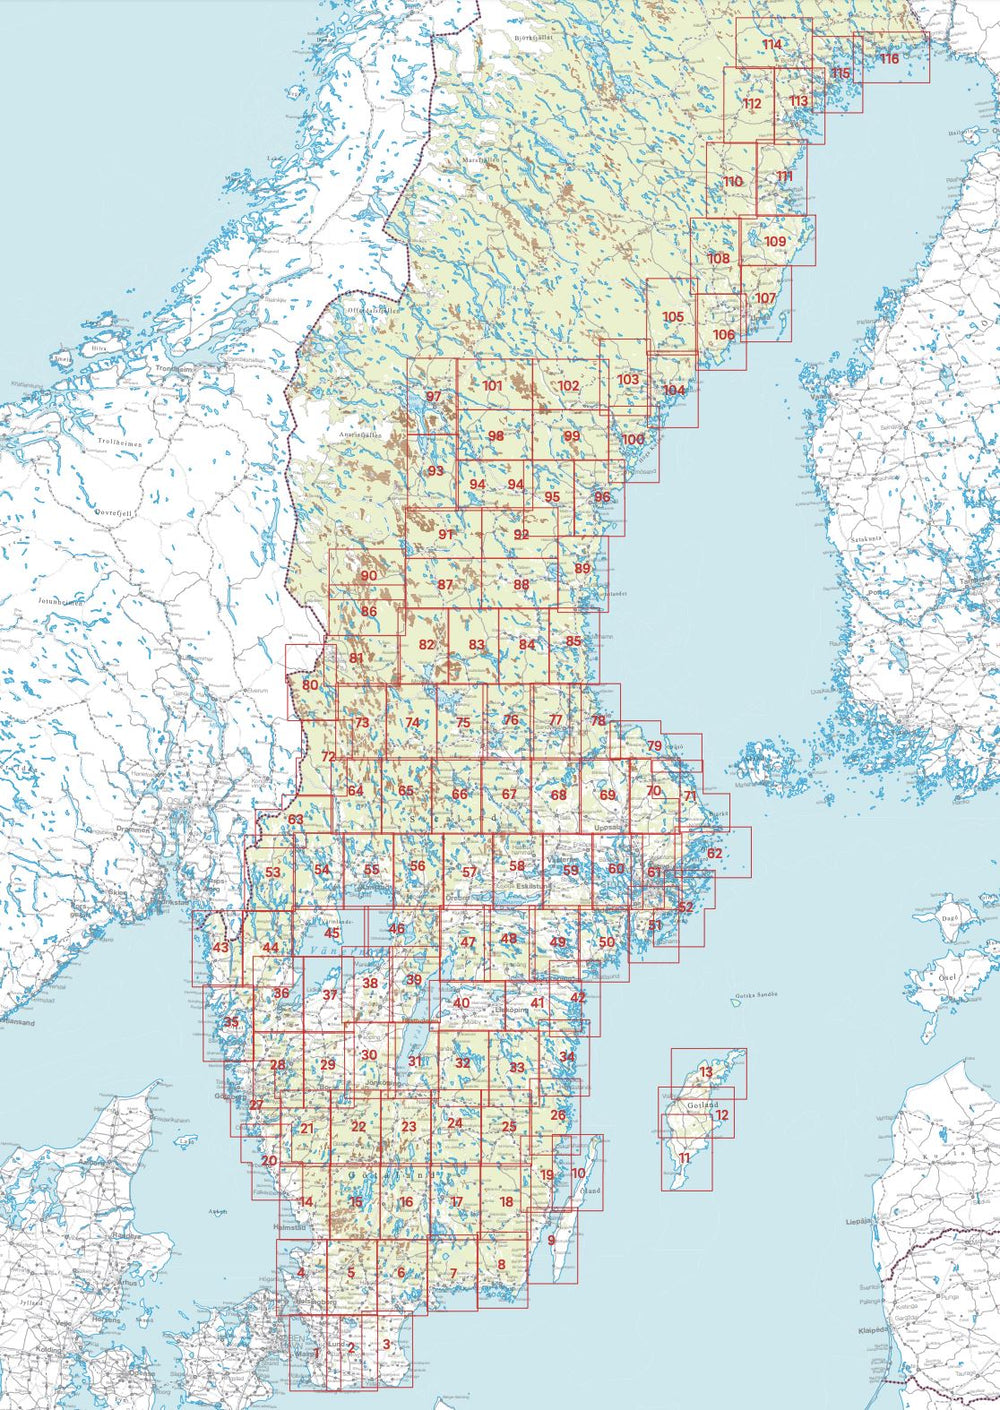 Carte topographique n° 110 - Boliden (Suède) | Norstedts - Sverigeserien carte pliée Norstedts 